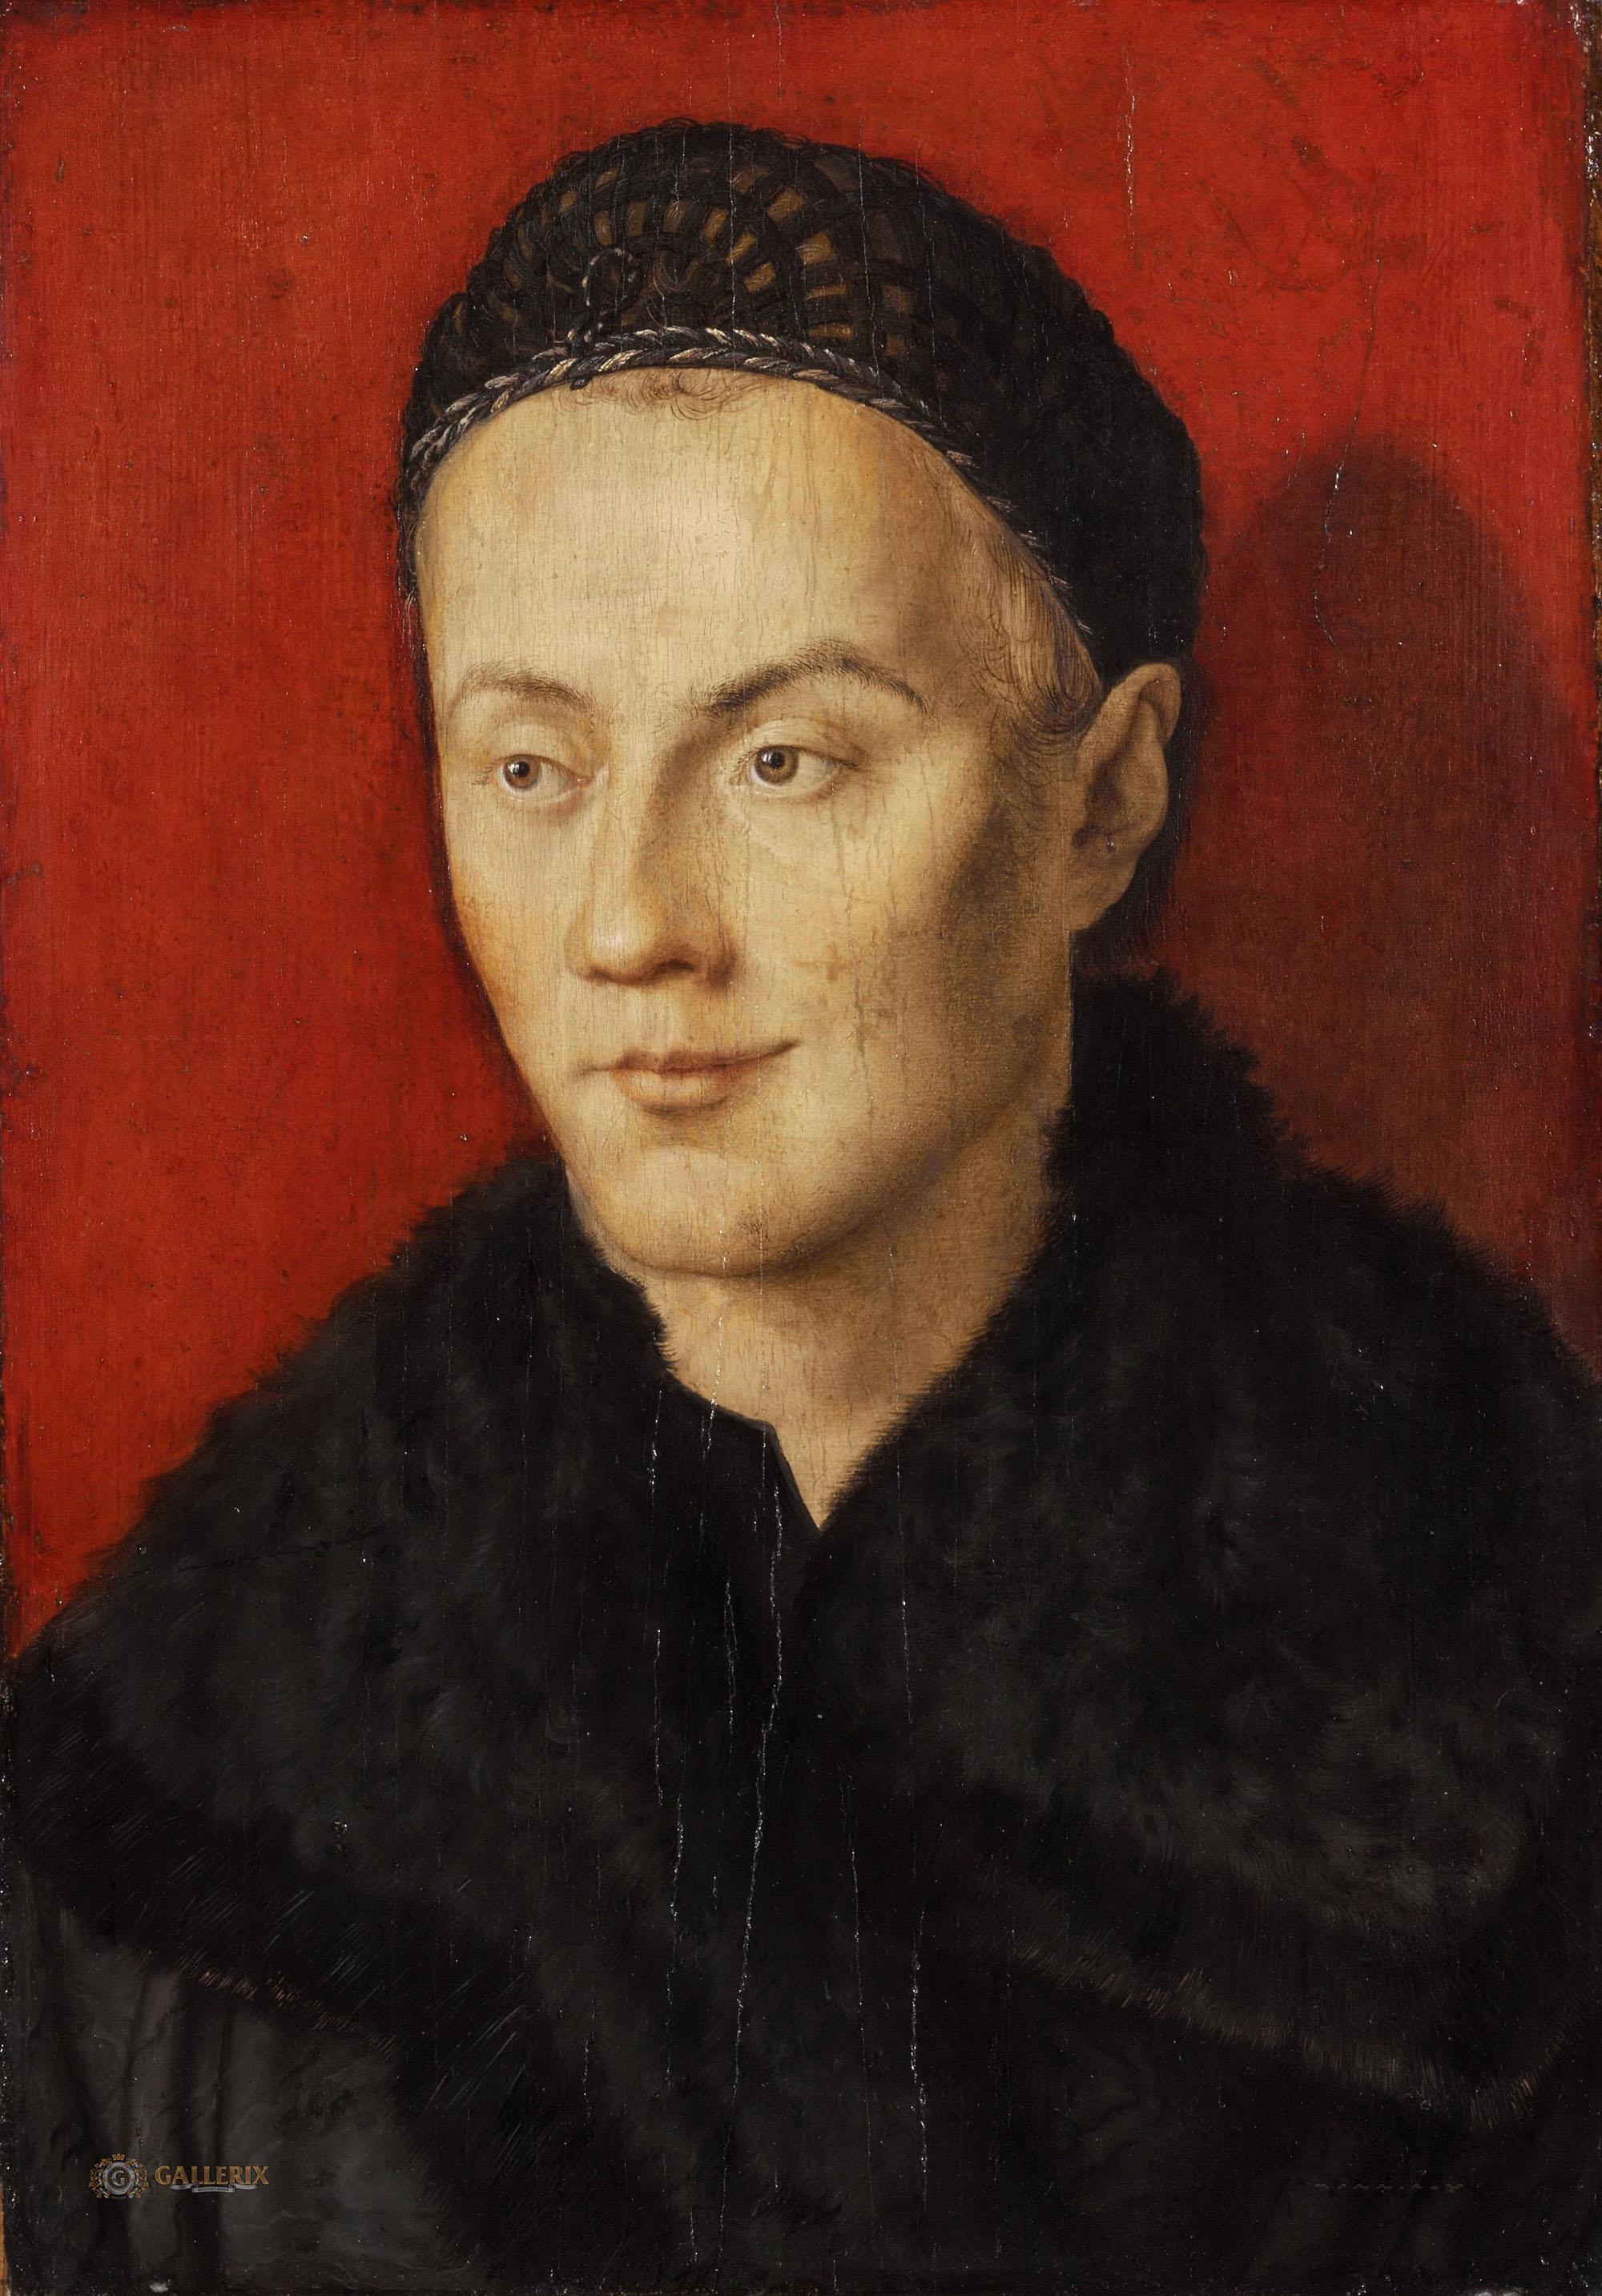 Альбрехт Дюрер. "Мужской портрет". 1503-1505.